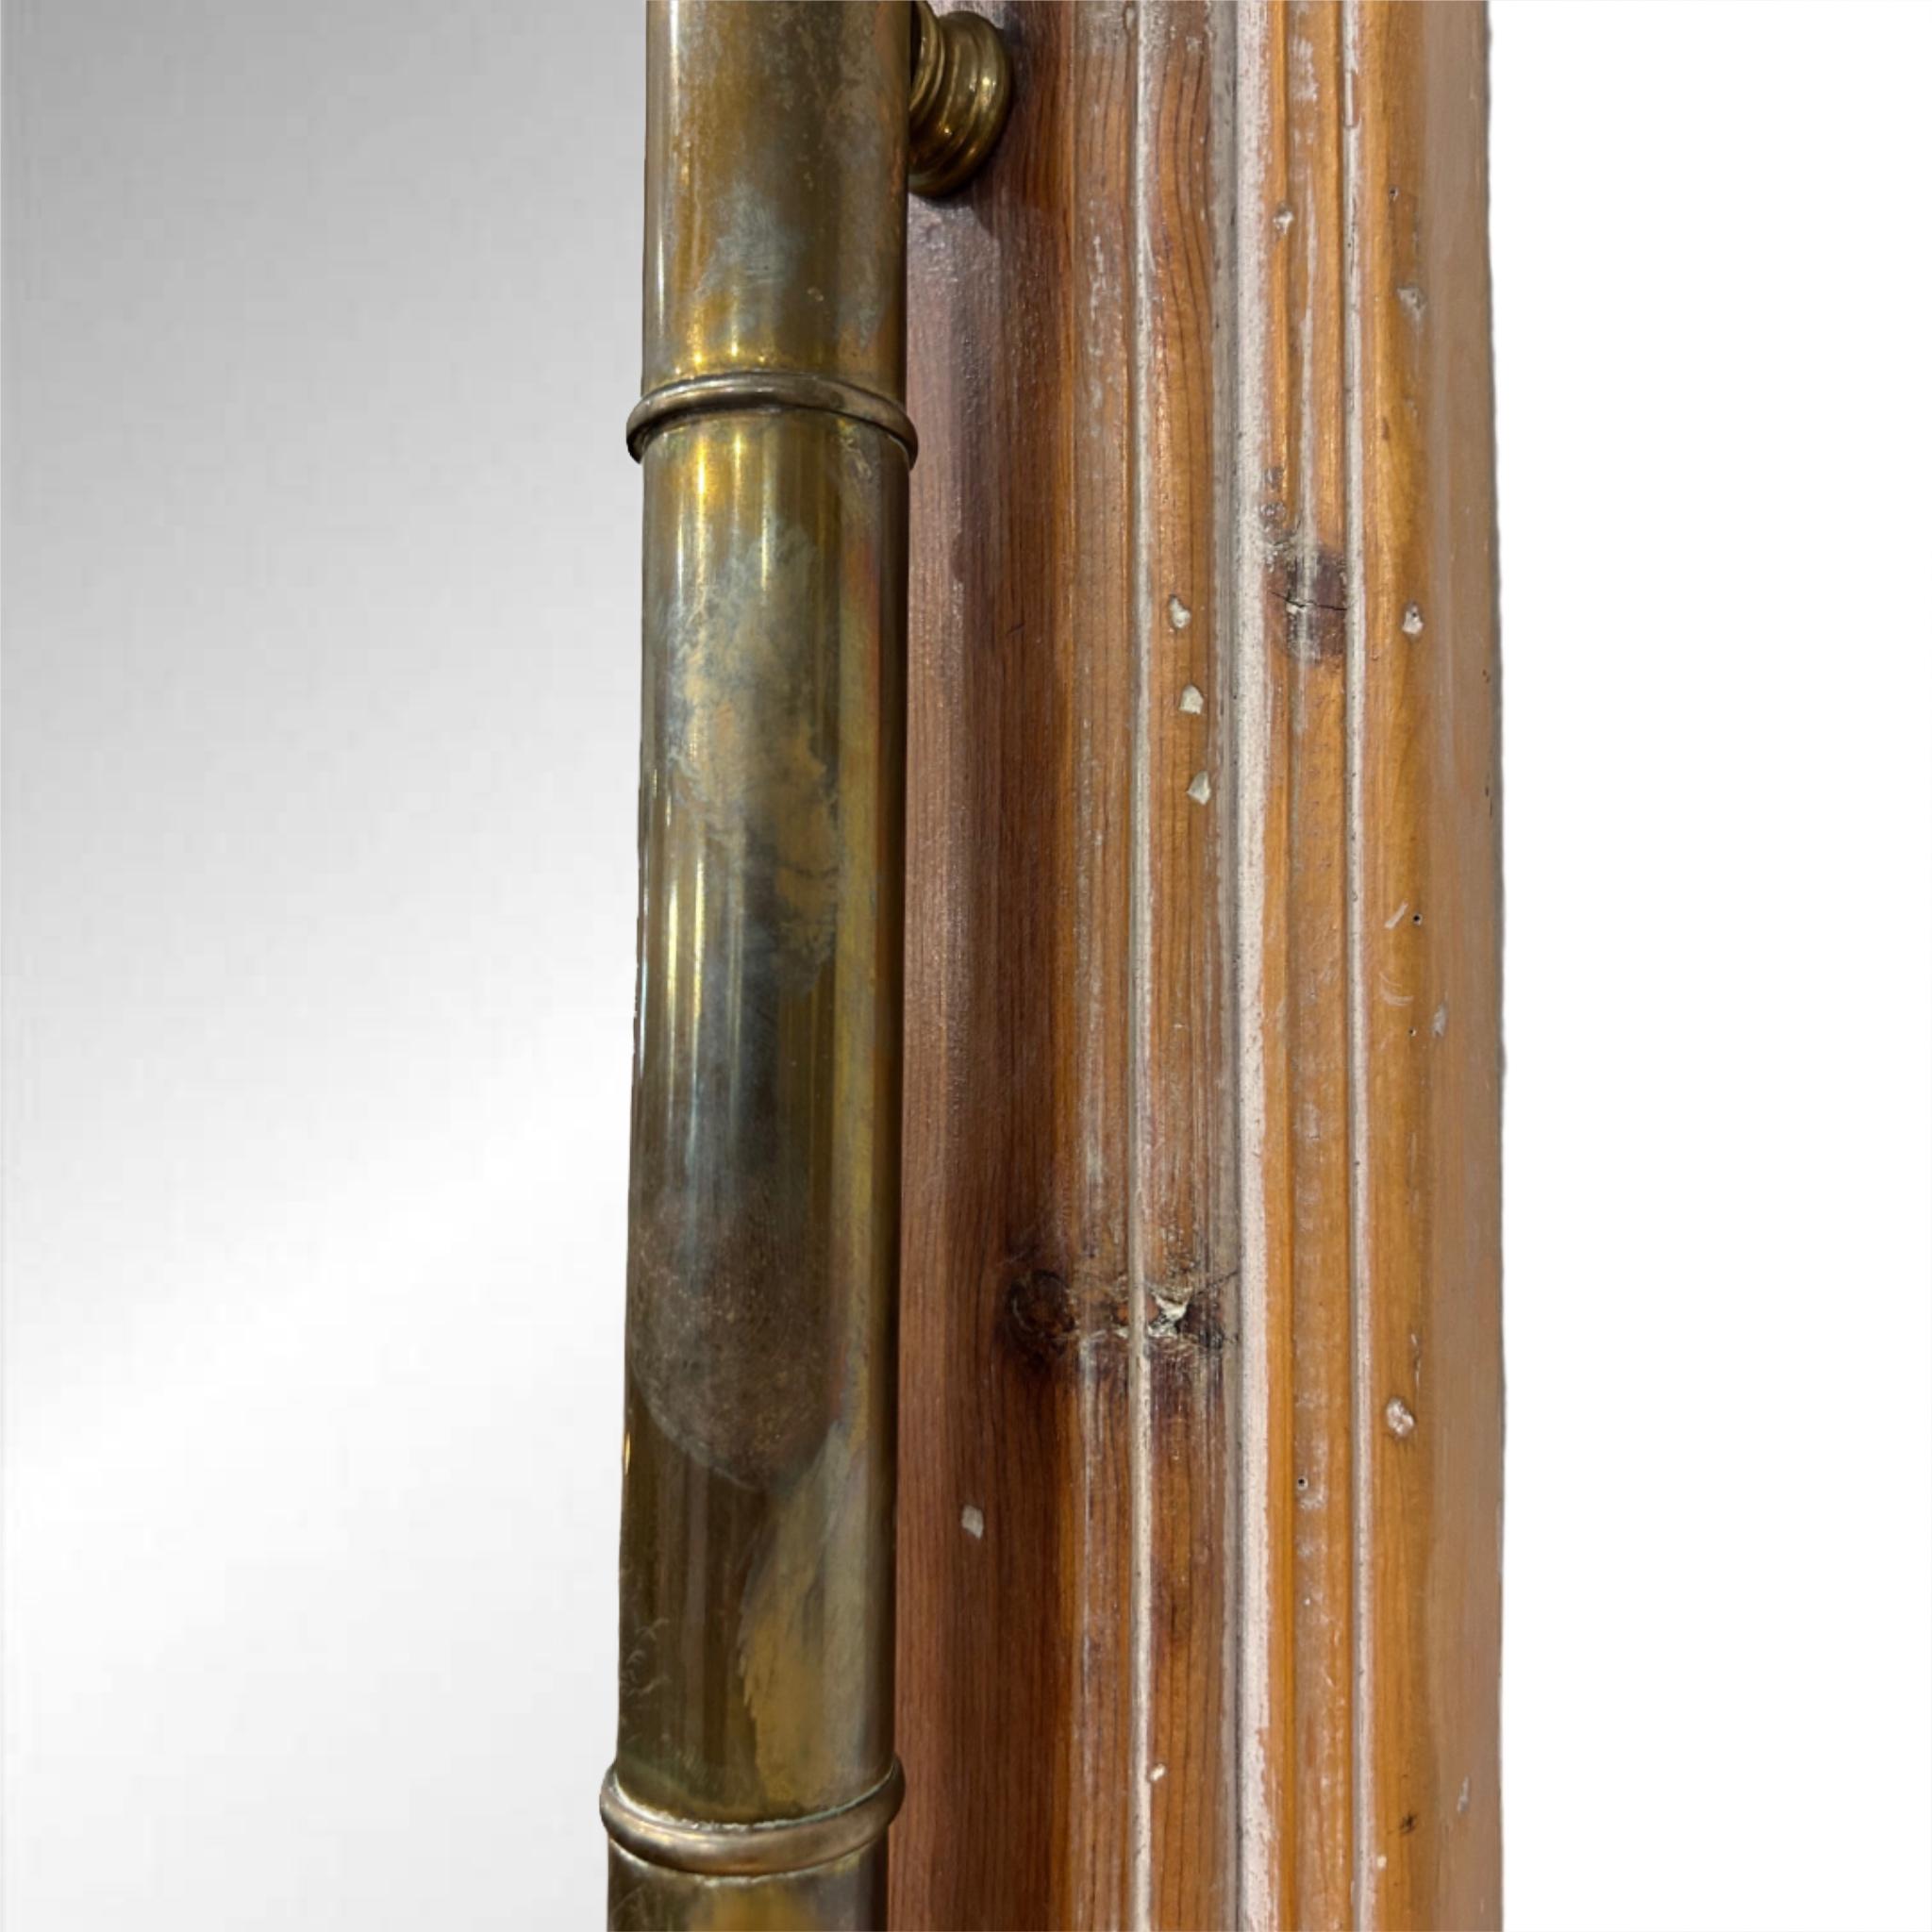 Vintage Holz & Messing Spiegel 

Holzrahmen mit Messingstab-Akzenten 

Natürliche Patina auf Messing

Draht auf der Rückseite zum Aufhängen
